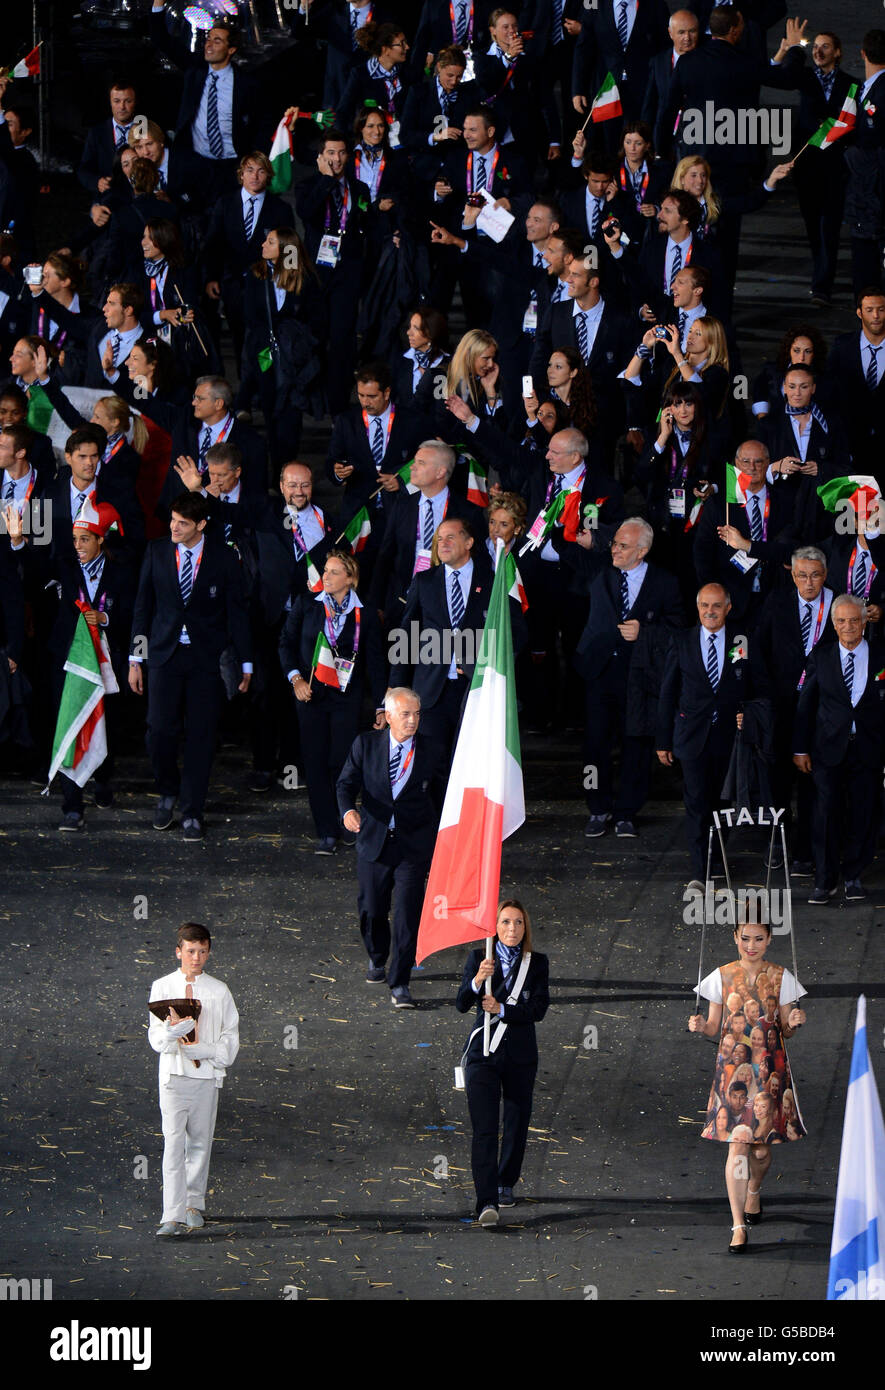 Giochi Olimpici di Londra - giorno 0. La parata della squadra italiana durante la cerimonia di apertura dei Giochi Olimpici di Londra del 2012 allo Stadio Olimpico di Londra. Foto Stock